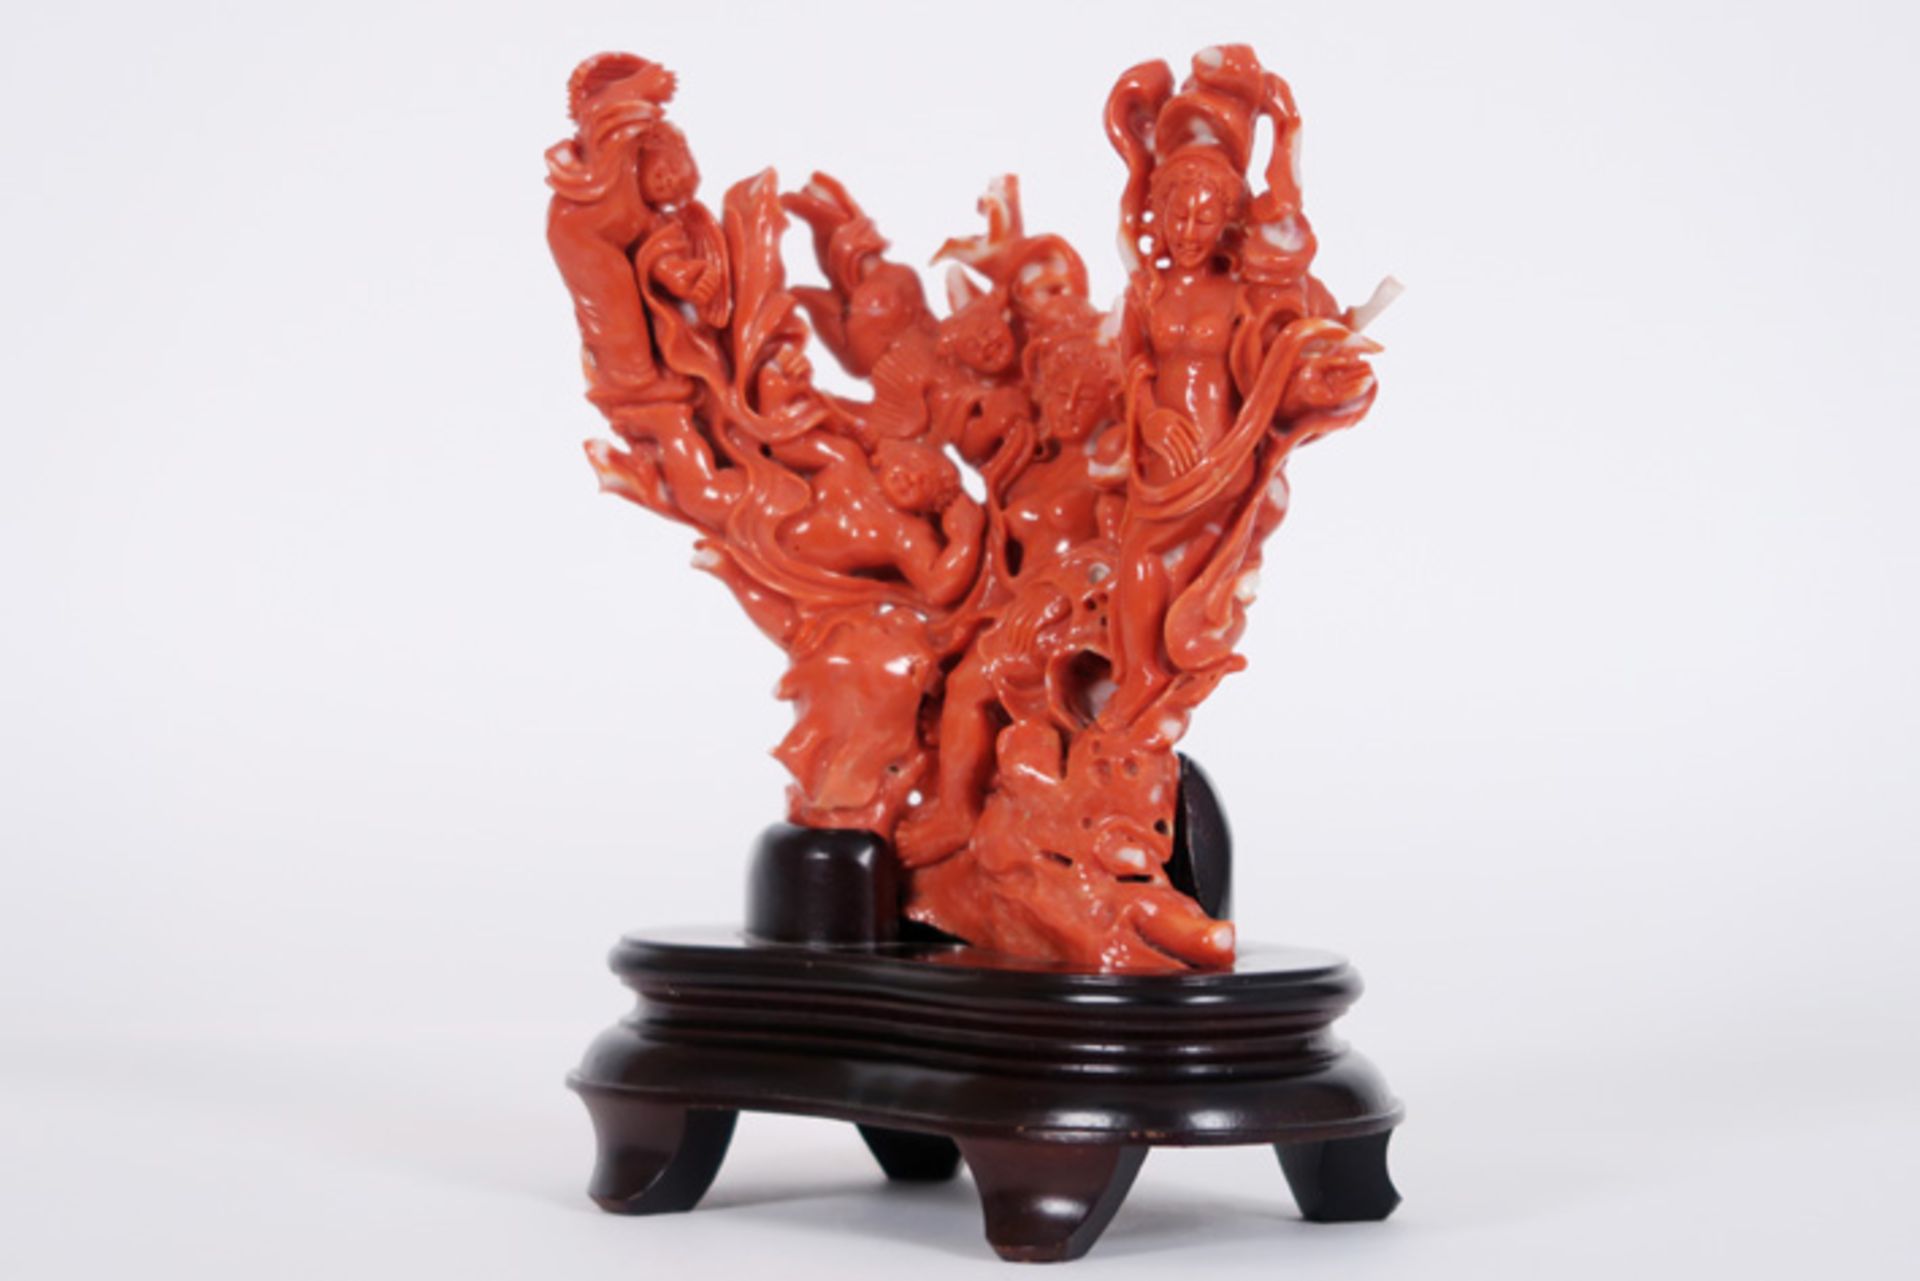 Zeer mooie Chinese sculptuur in rode koraal met een fijnuitgewerkte boeddhistische [...] - Bild 4 aus 4